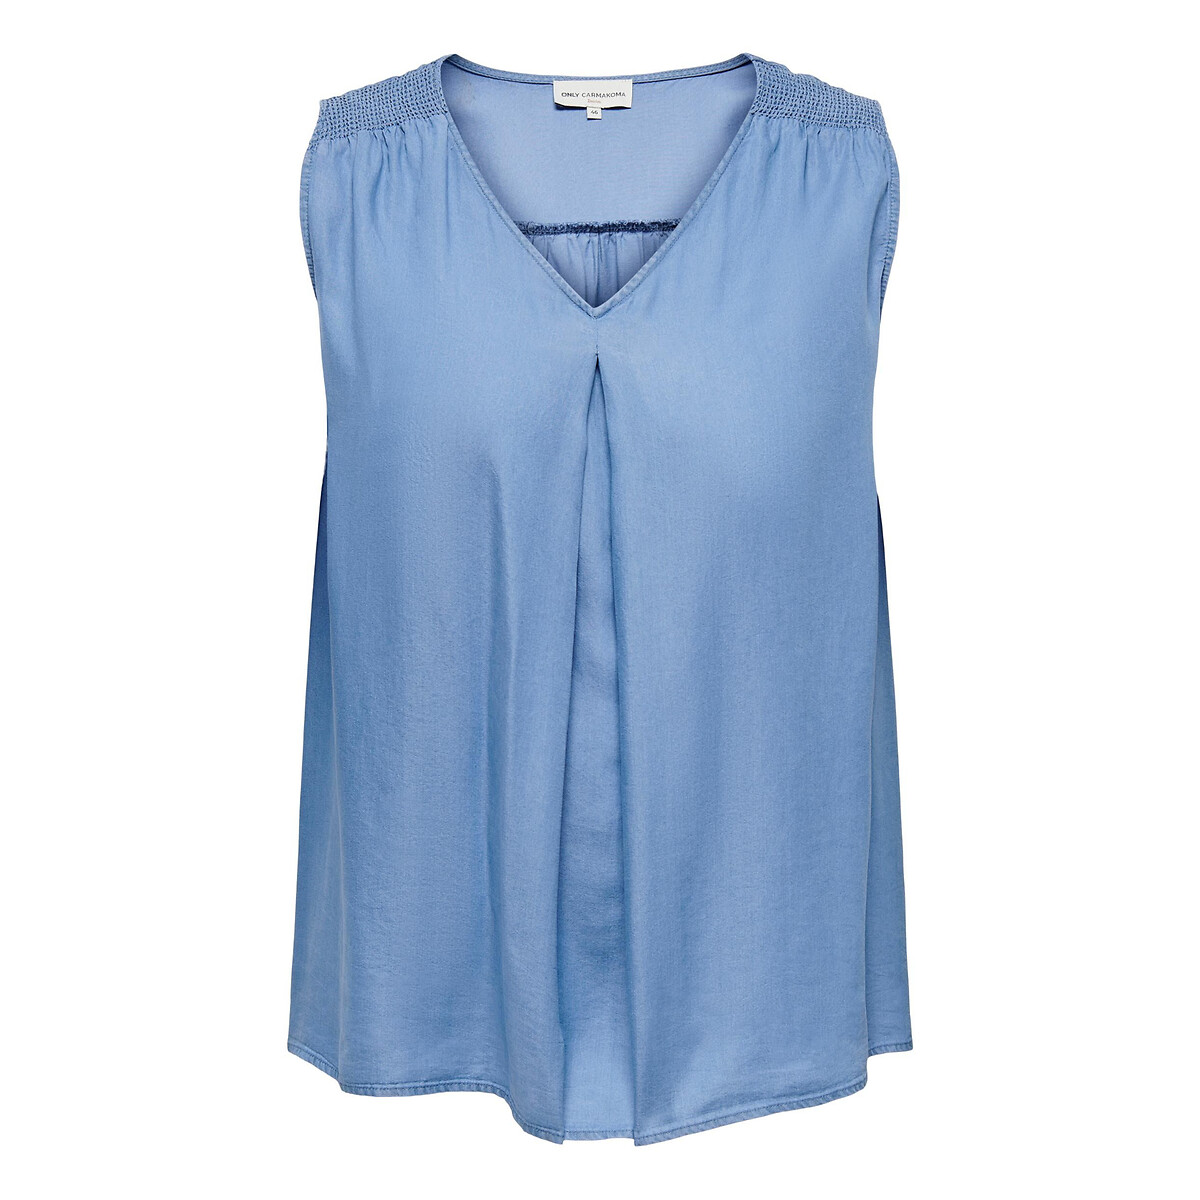 Soepele blouse zonder mouwen in de sale-ONLY Carmakoma 1